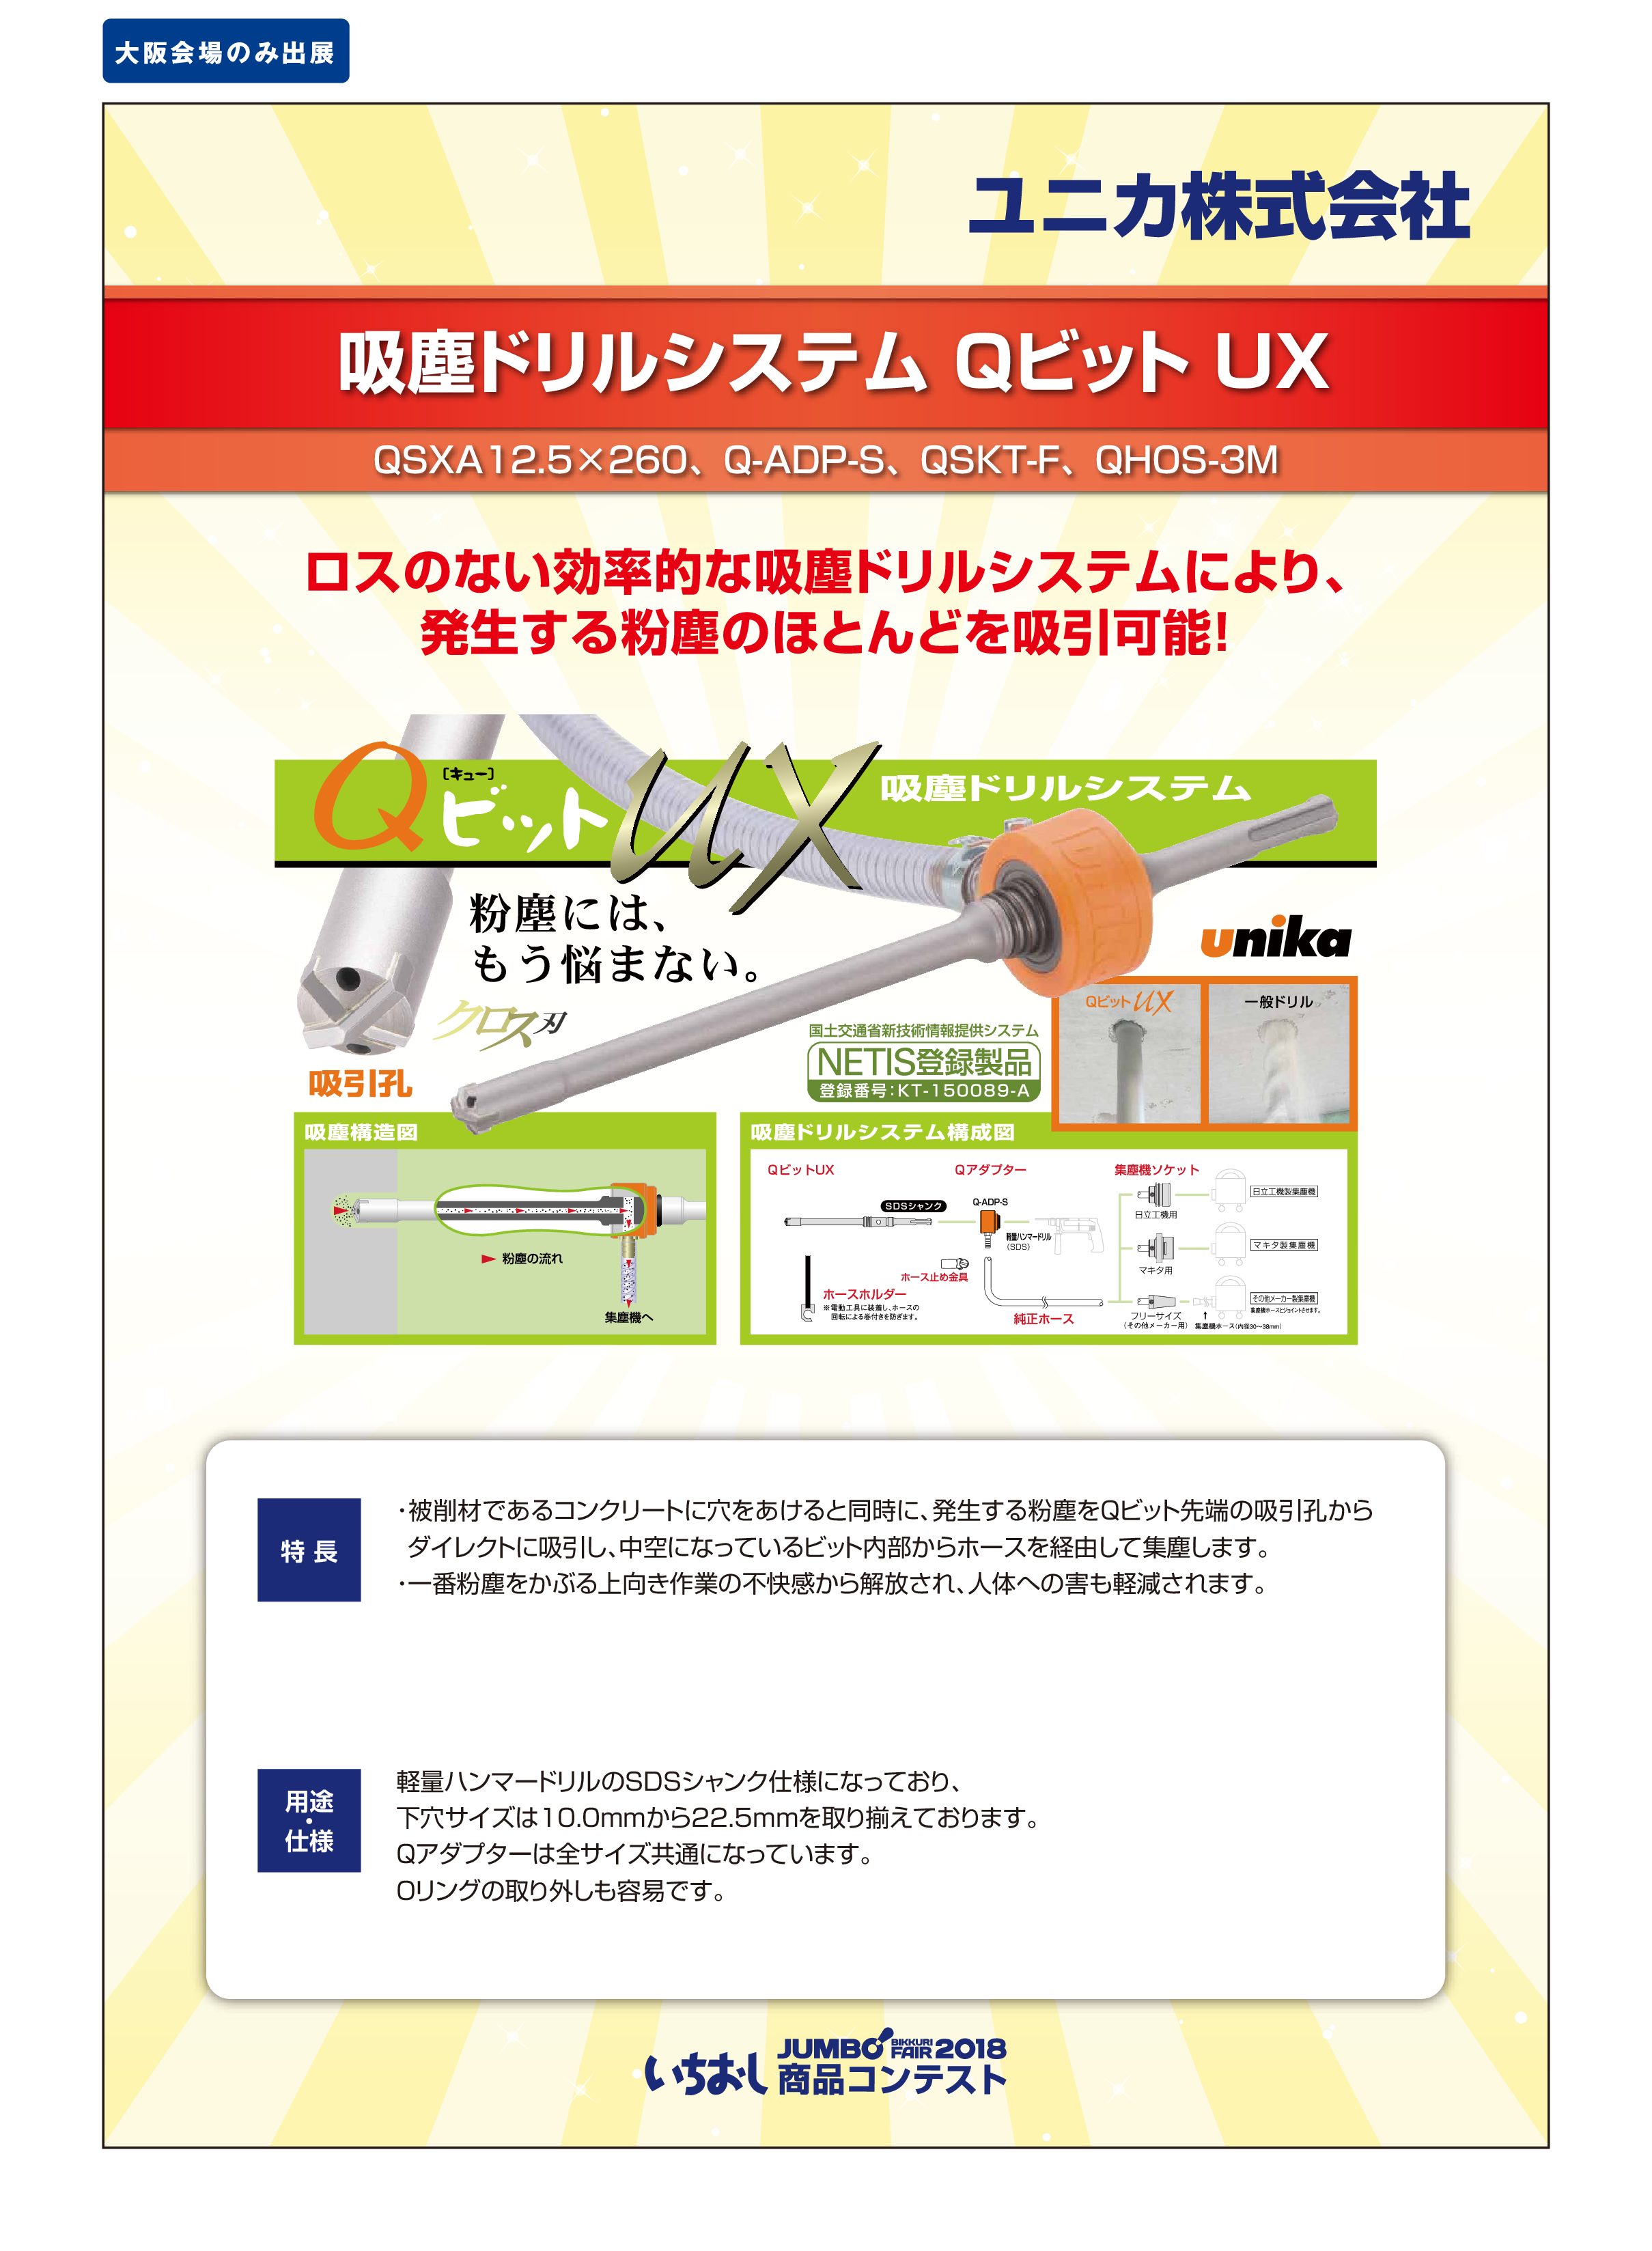 「吸塵ドリルシステム Qビット UX」ユニカ株式会社